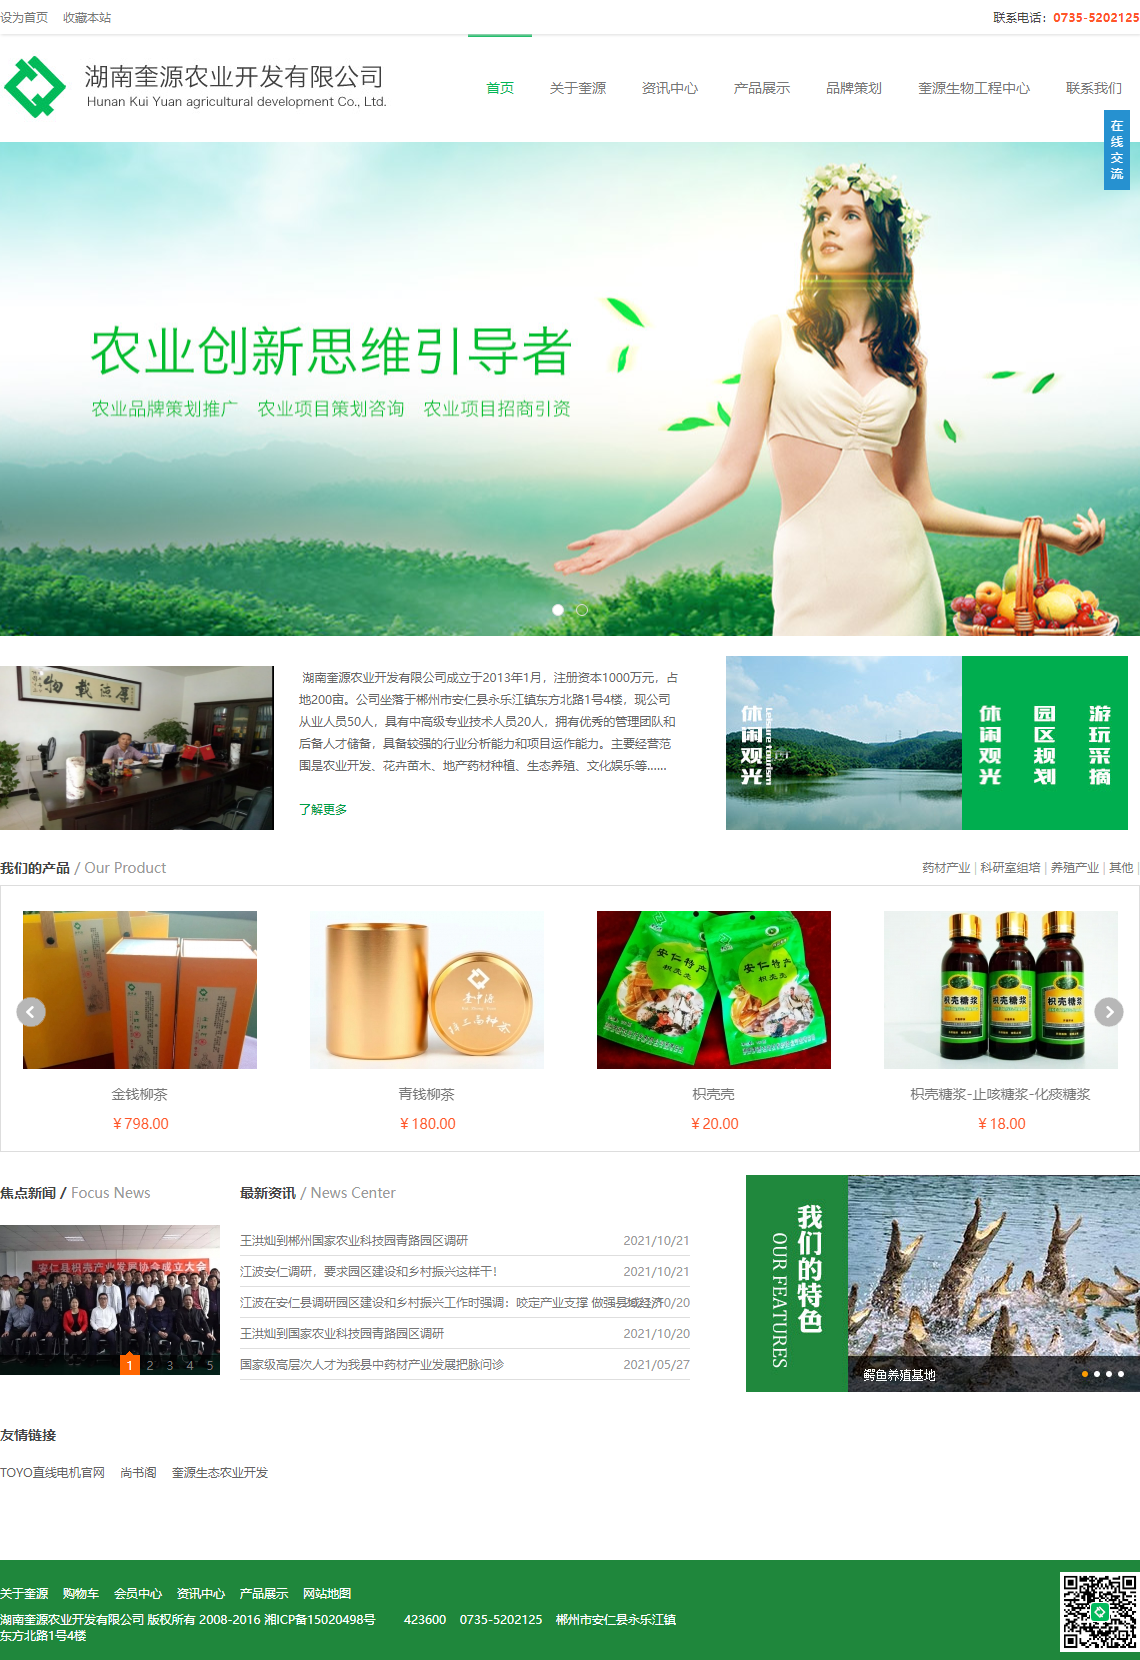 湖南奎源农业开发有限公司网站案例